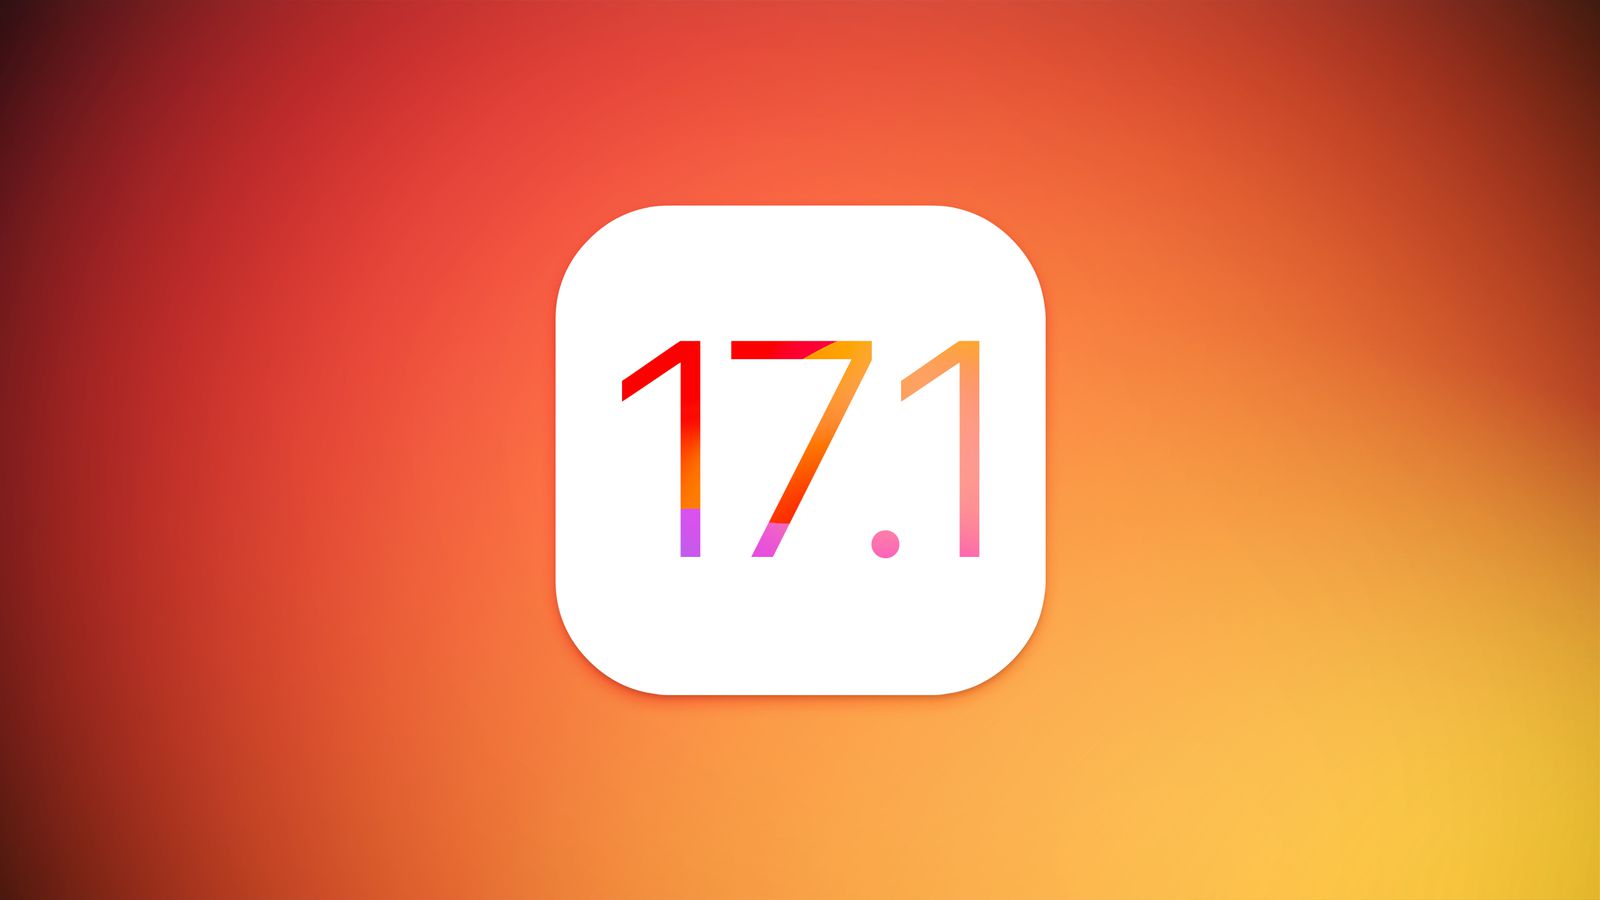 Efter macOS Sonoma 14.1 Beta 1: den första testversionen av iOS 17.1 har släppts